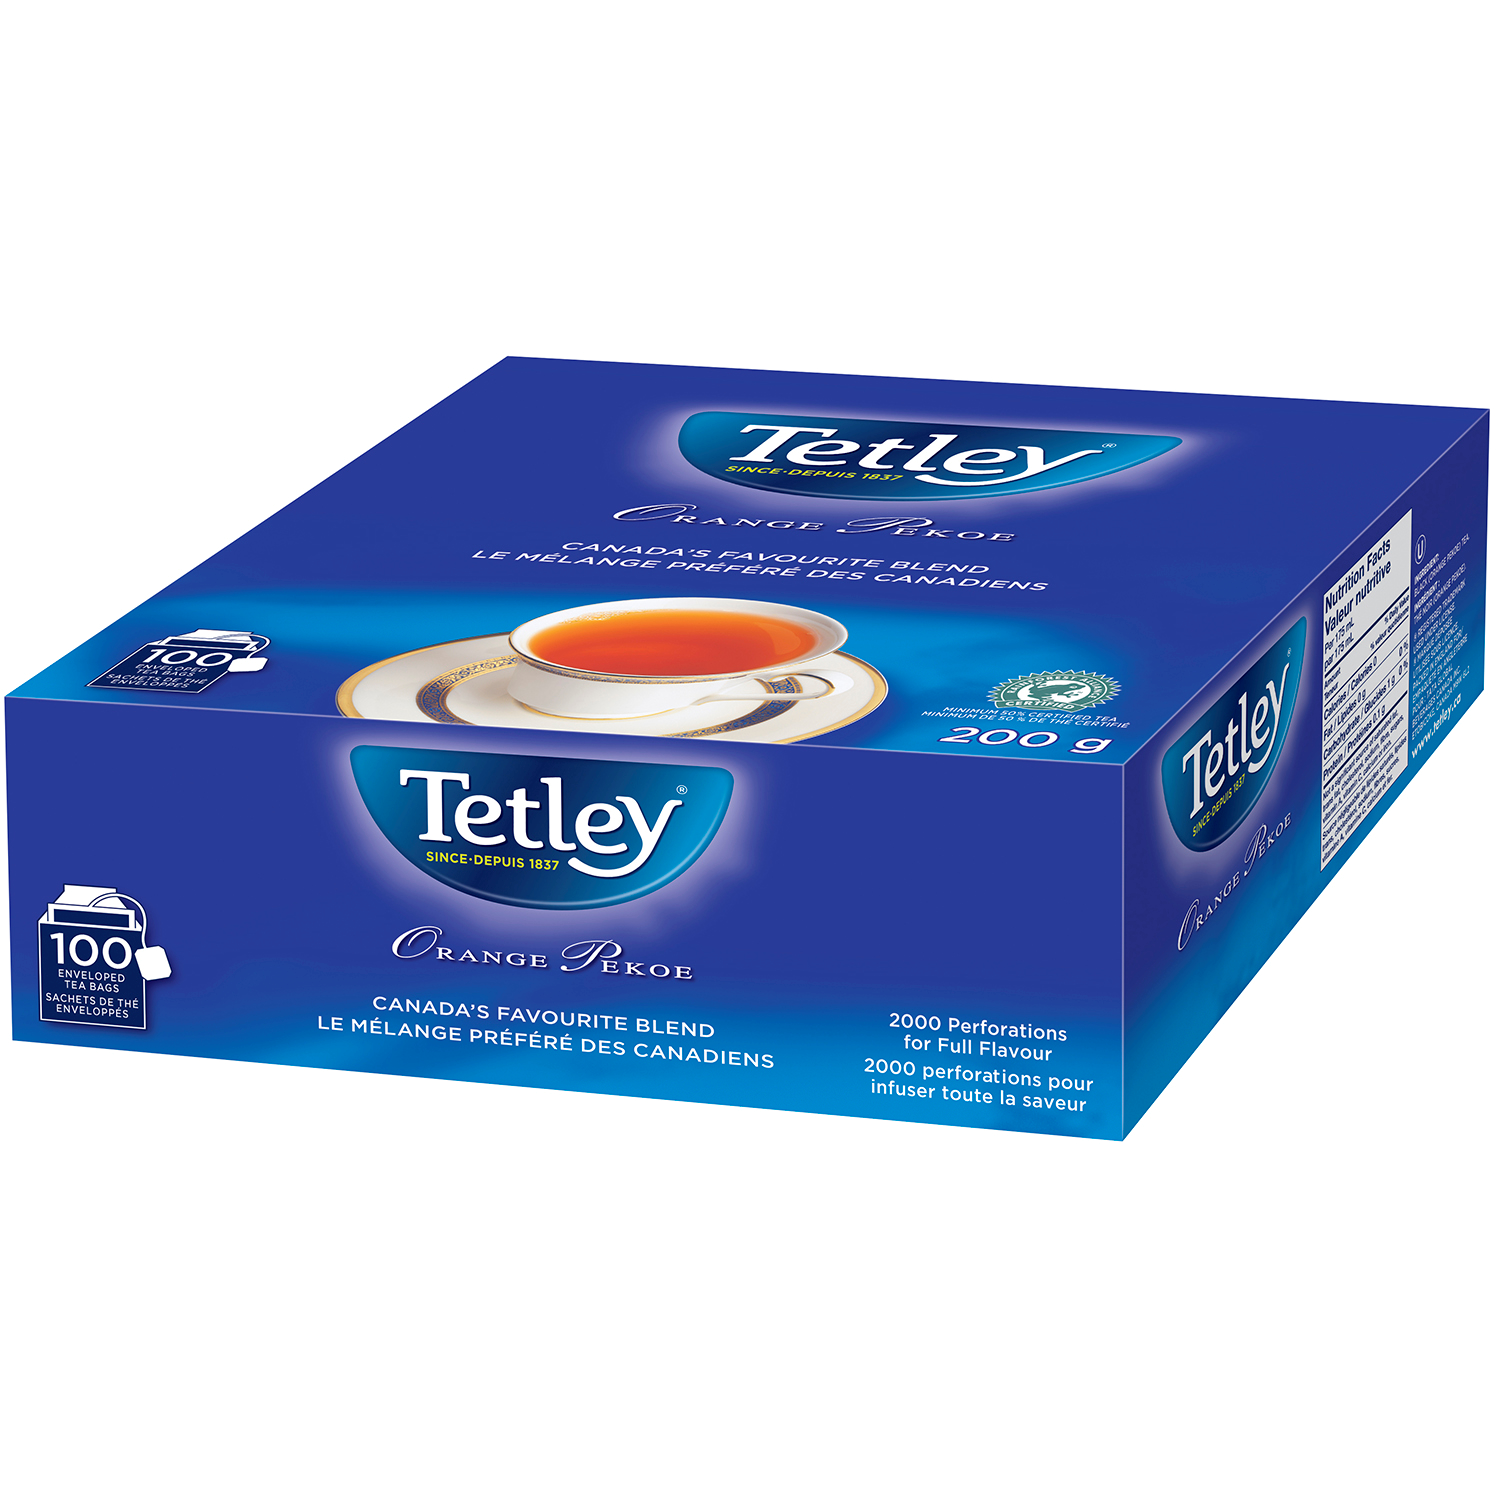 Tetley Tea Orange Pekoe
100/Box